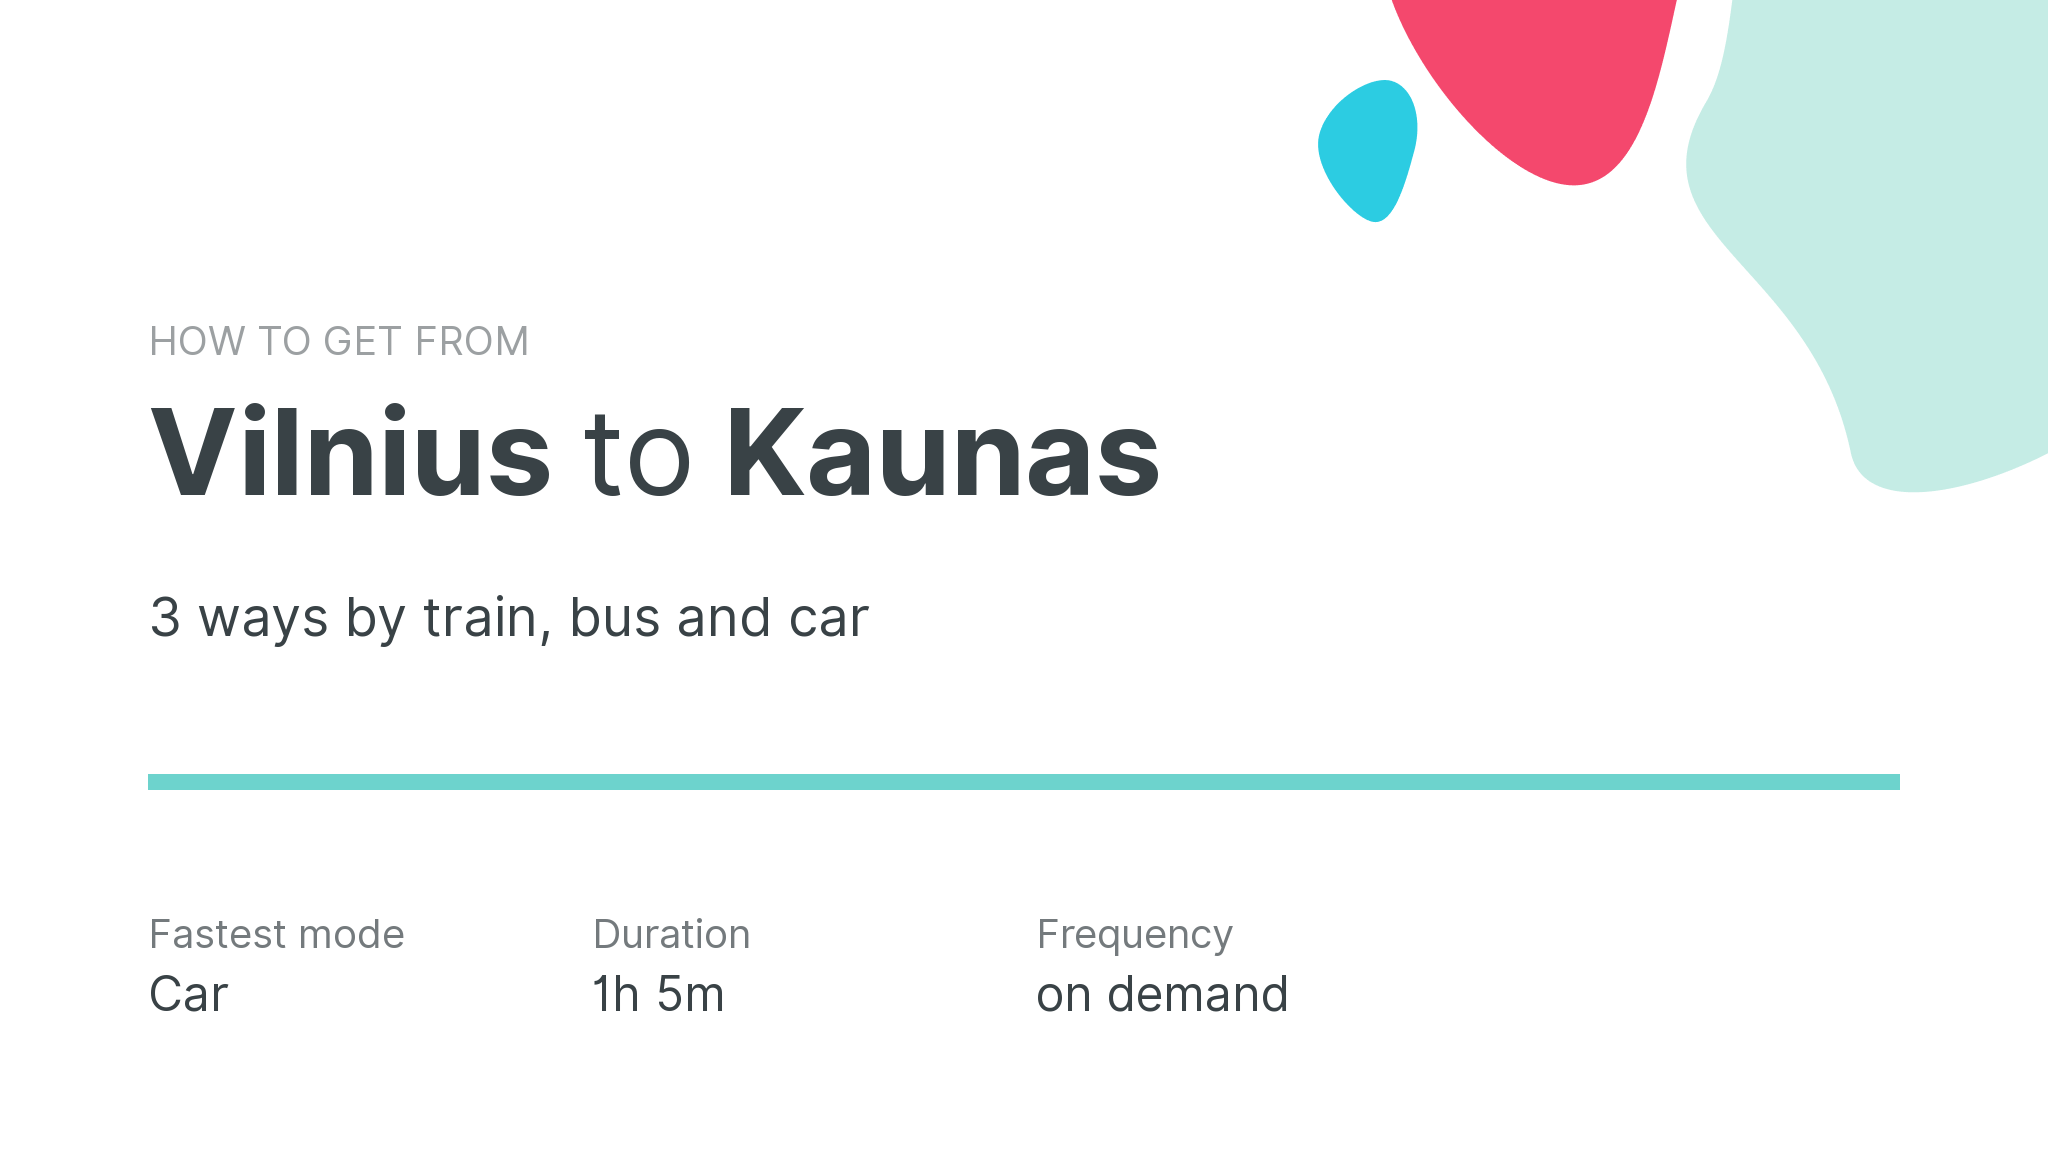 How do I get from Vilnius to Kaunas